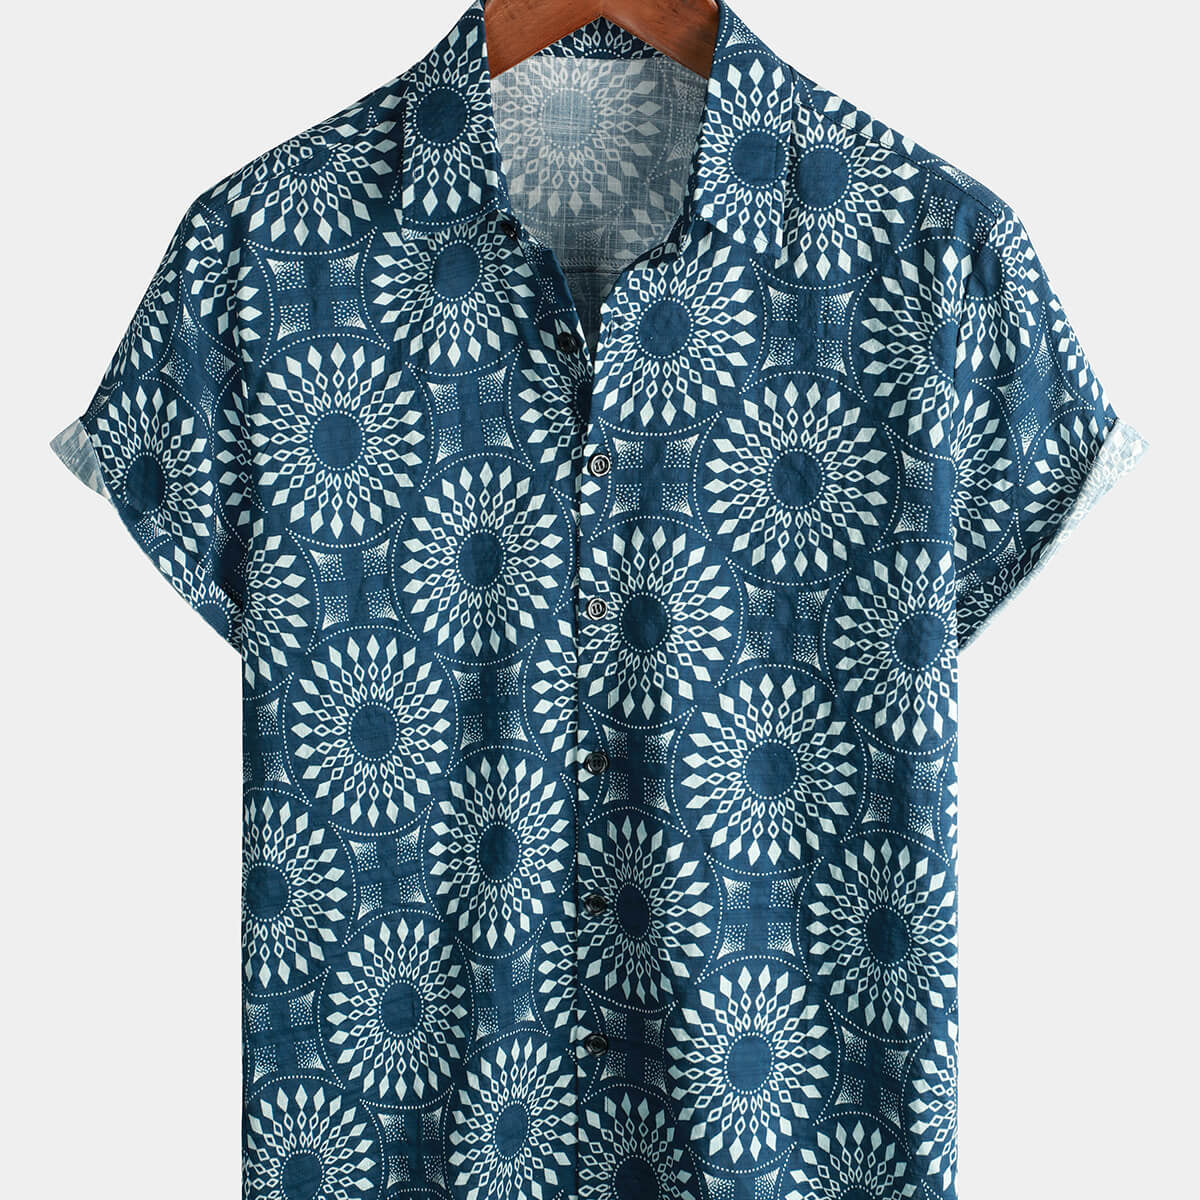 Camisa de manga corta con botones para hombre, algodón, años 70, estilo vintage, azul, retro, resort, playa, verano